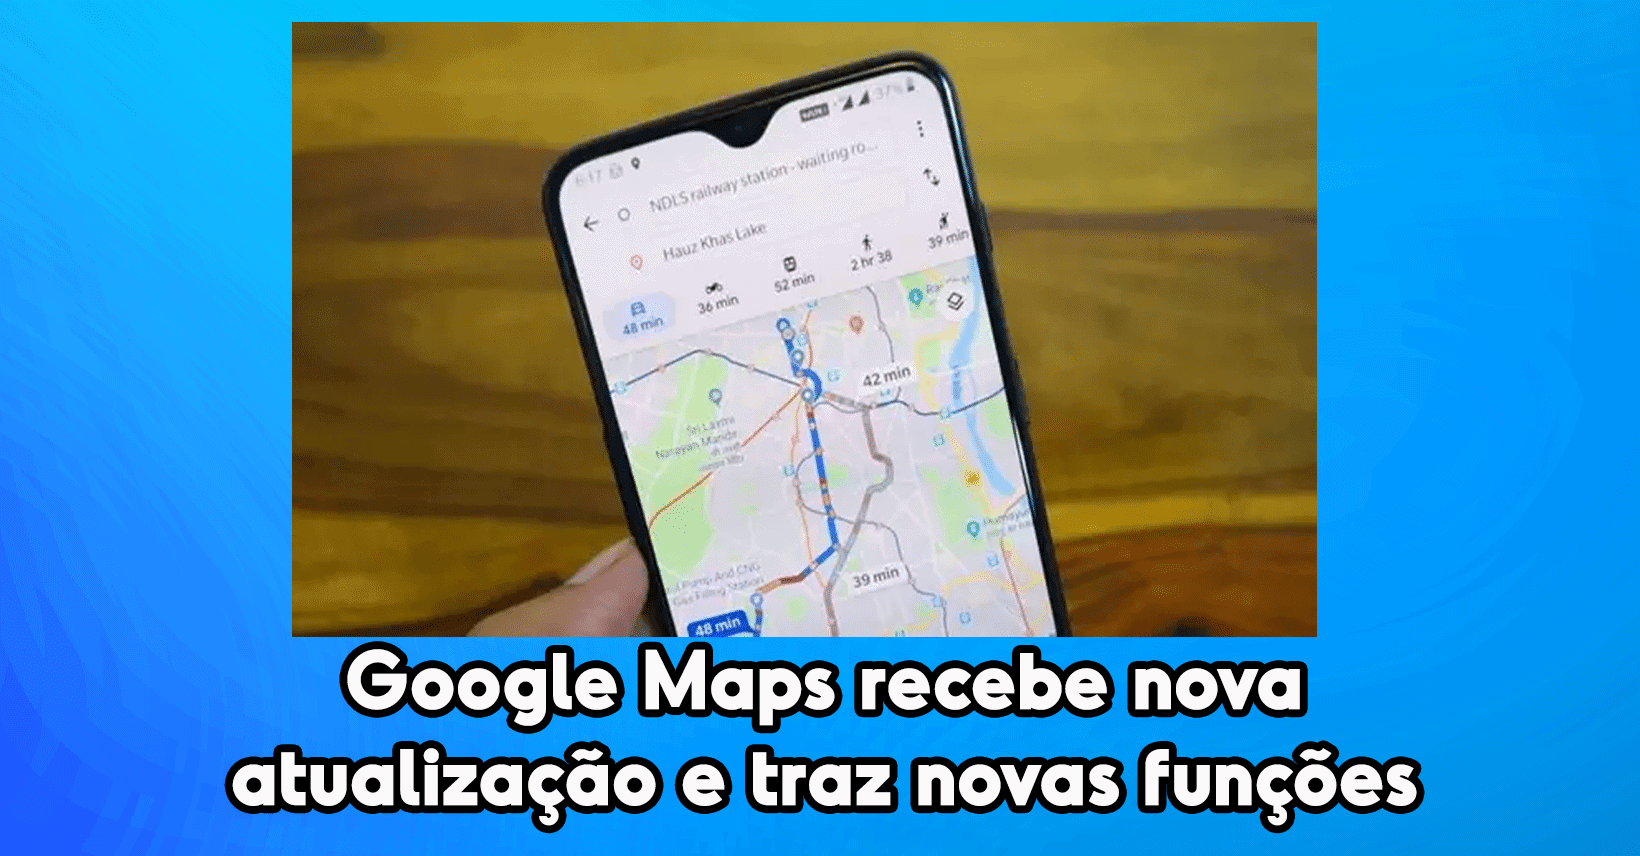 Google Maps recebe nova atualização e traz novas funções